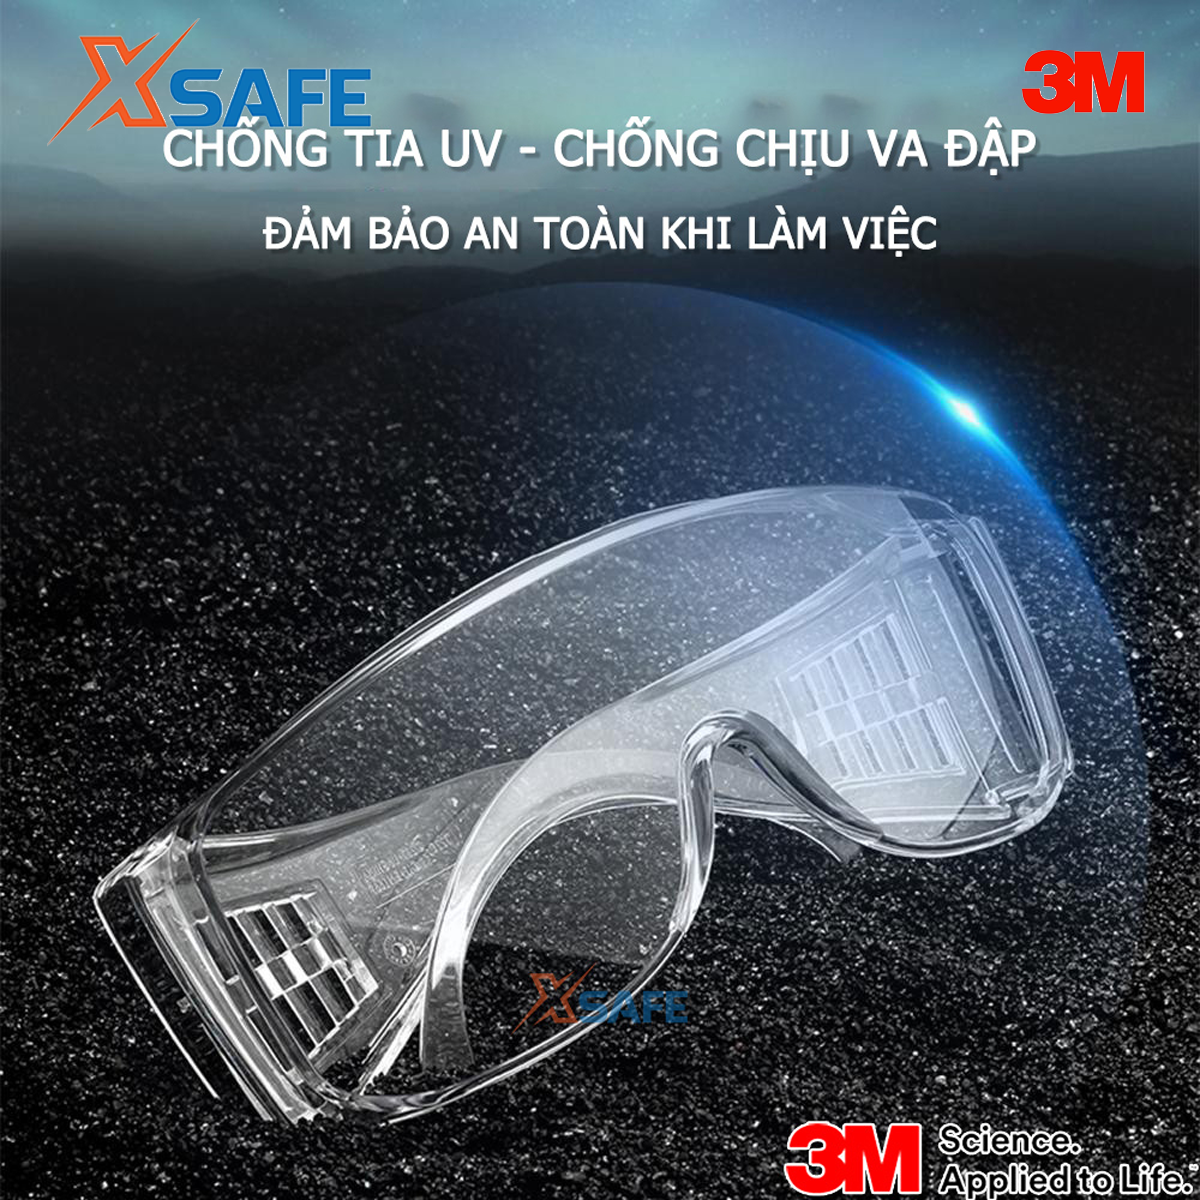 Hình ảnh Kính chống bụi 3M Tour Guard chống bụi Tia UV Chống mờ sương Trong suốt Đeo được kính cận Kính bảo hộ 3M - XSAFE